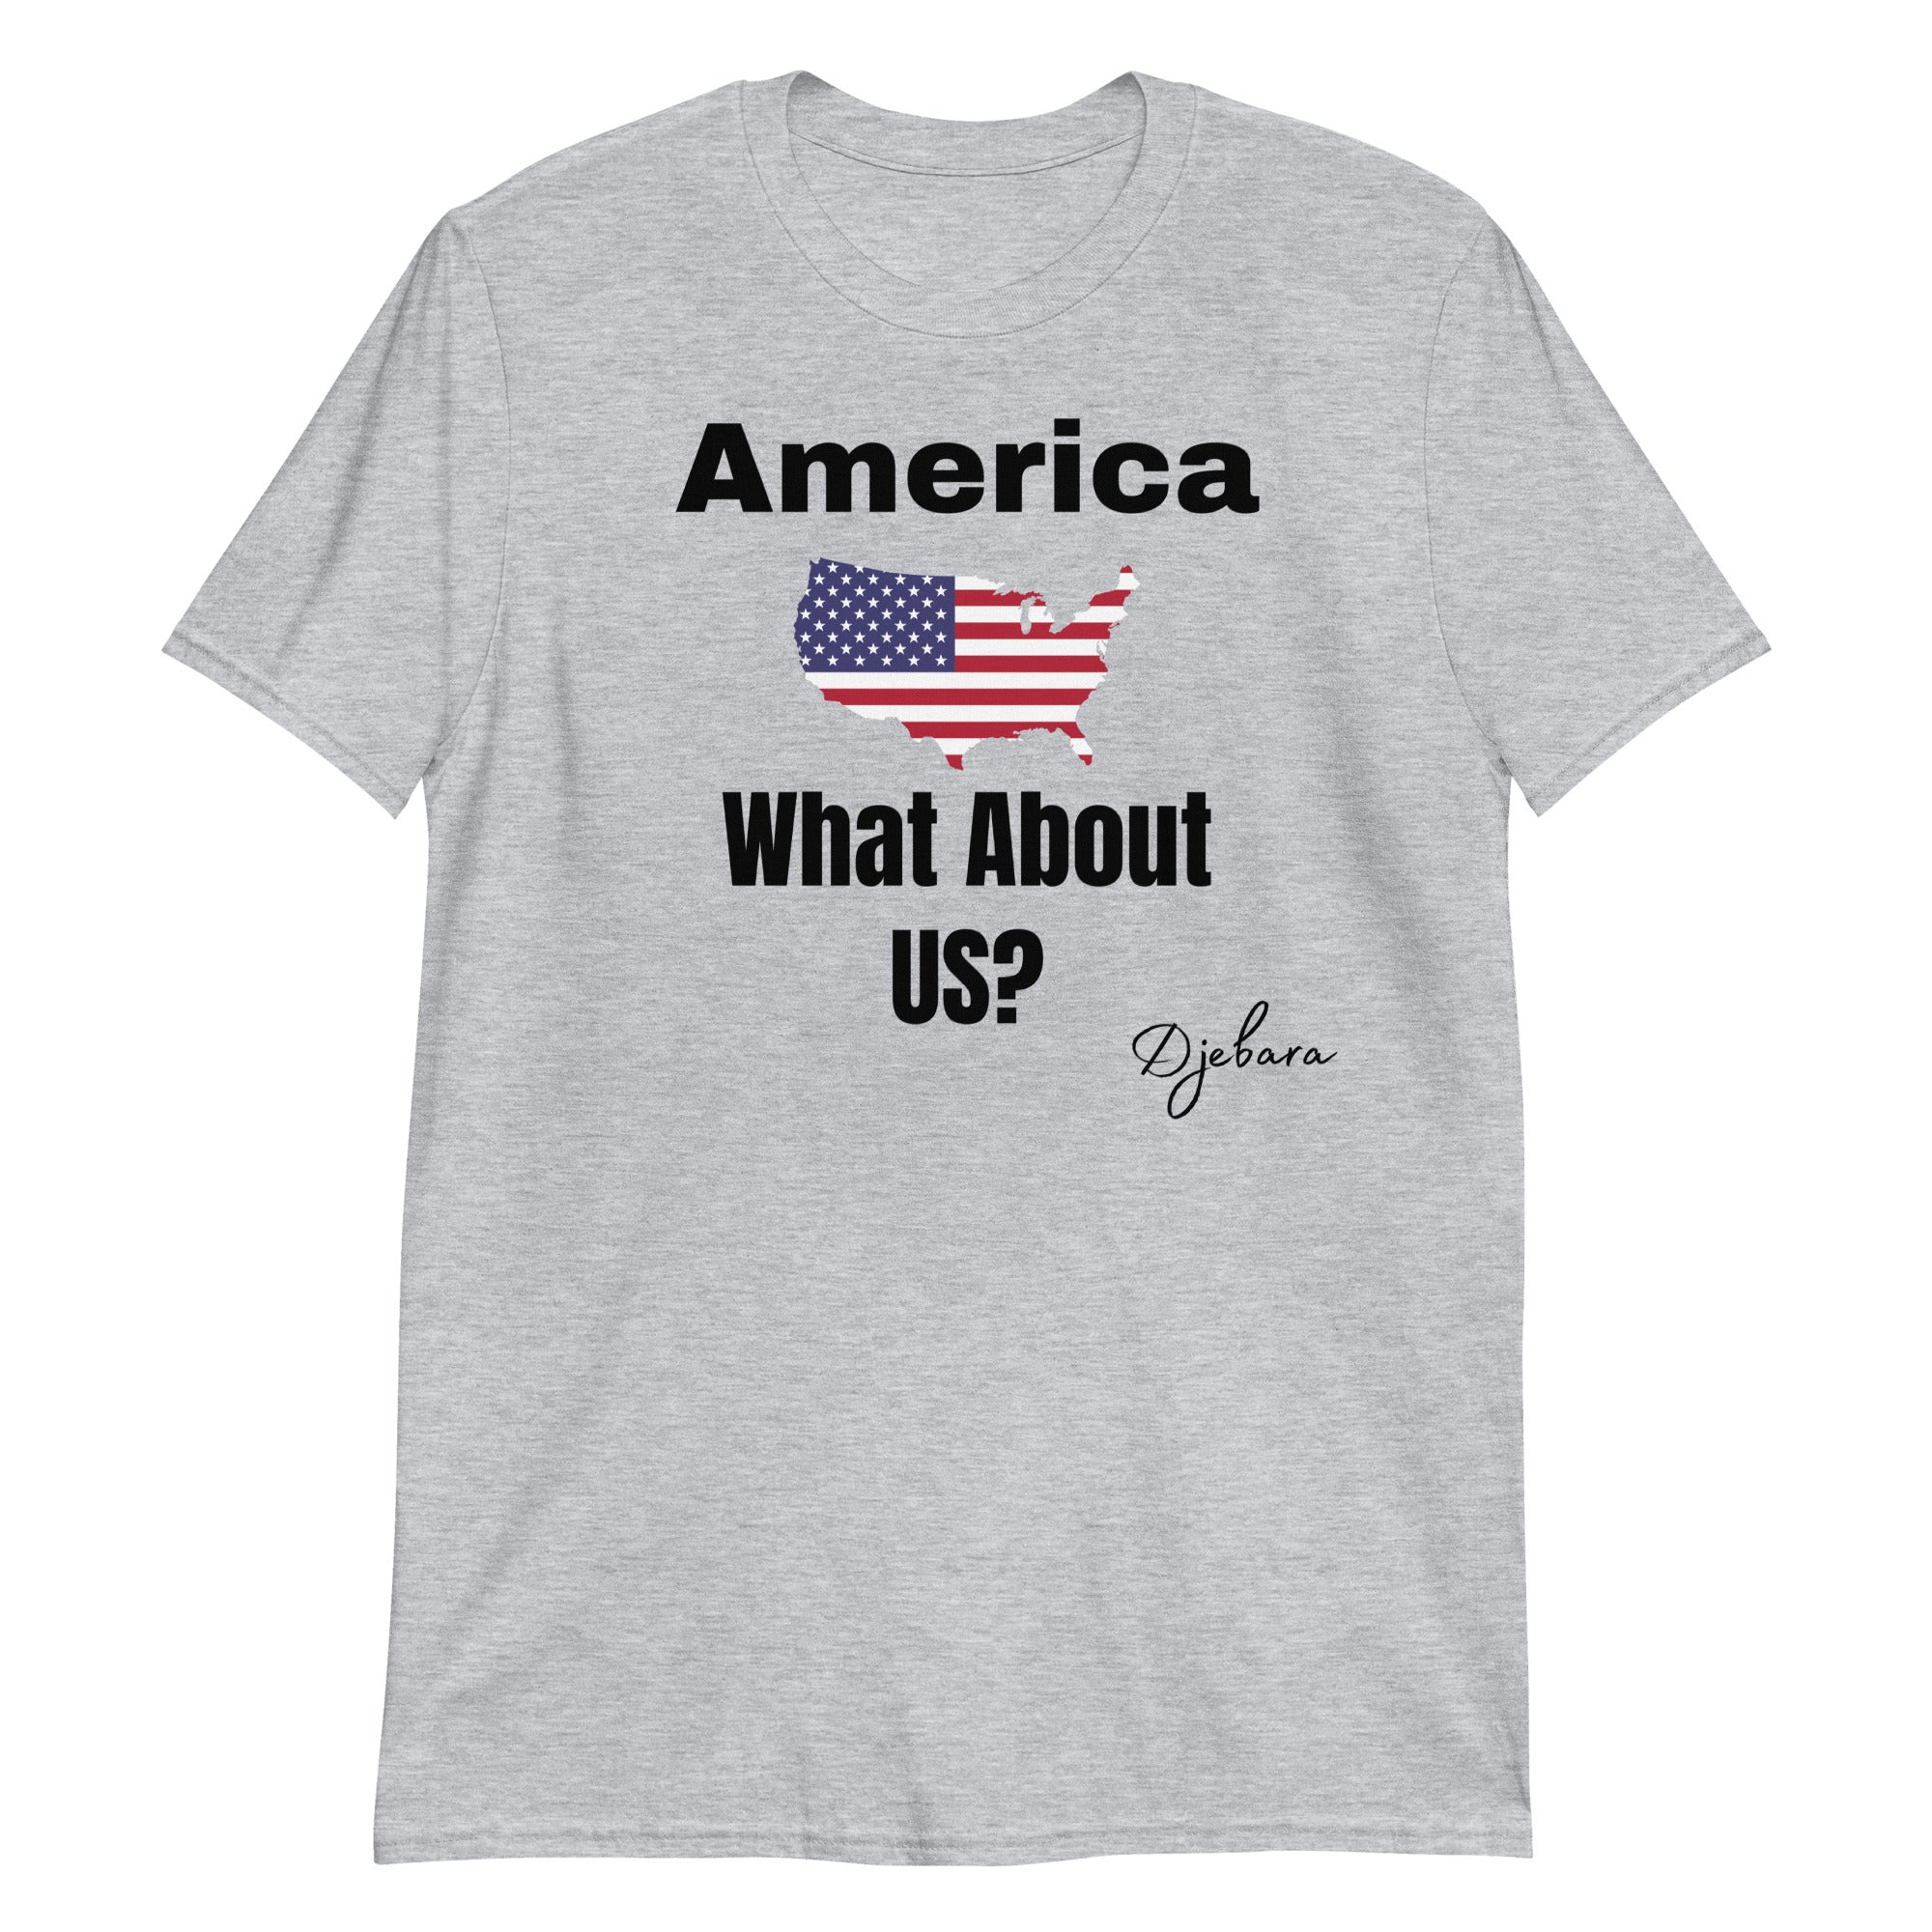 Sport Grey What About US? Short-Sleeve Gildan Unisex T-Shirt S-3XL